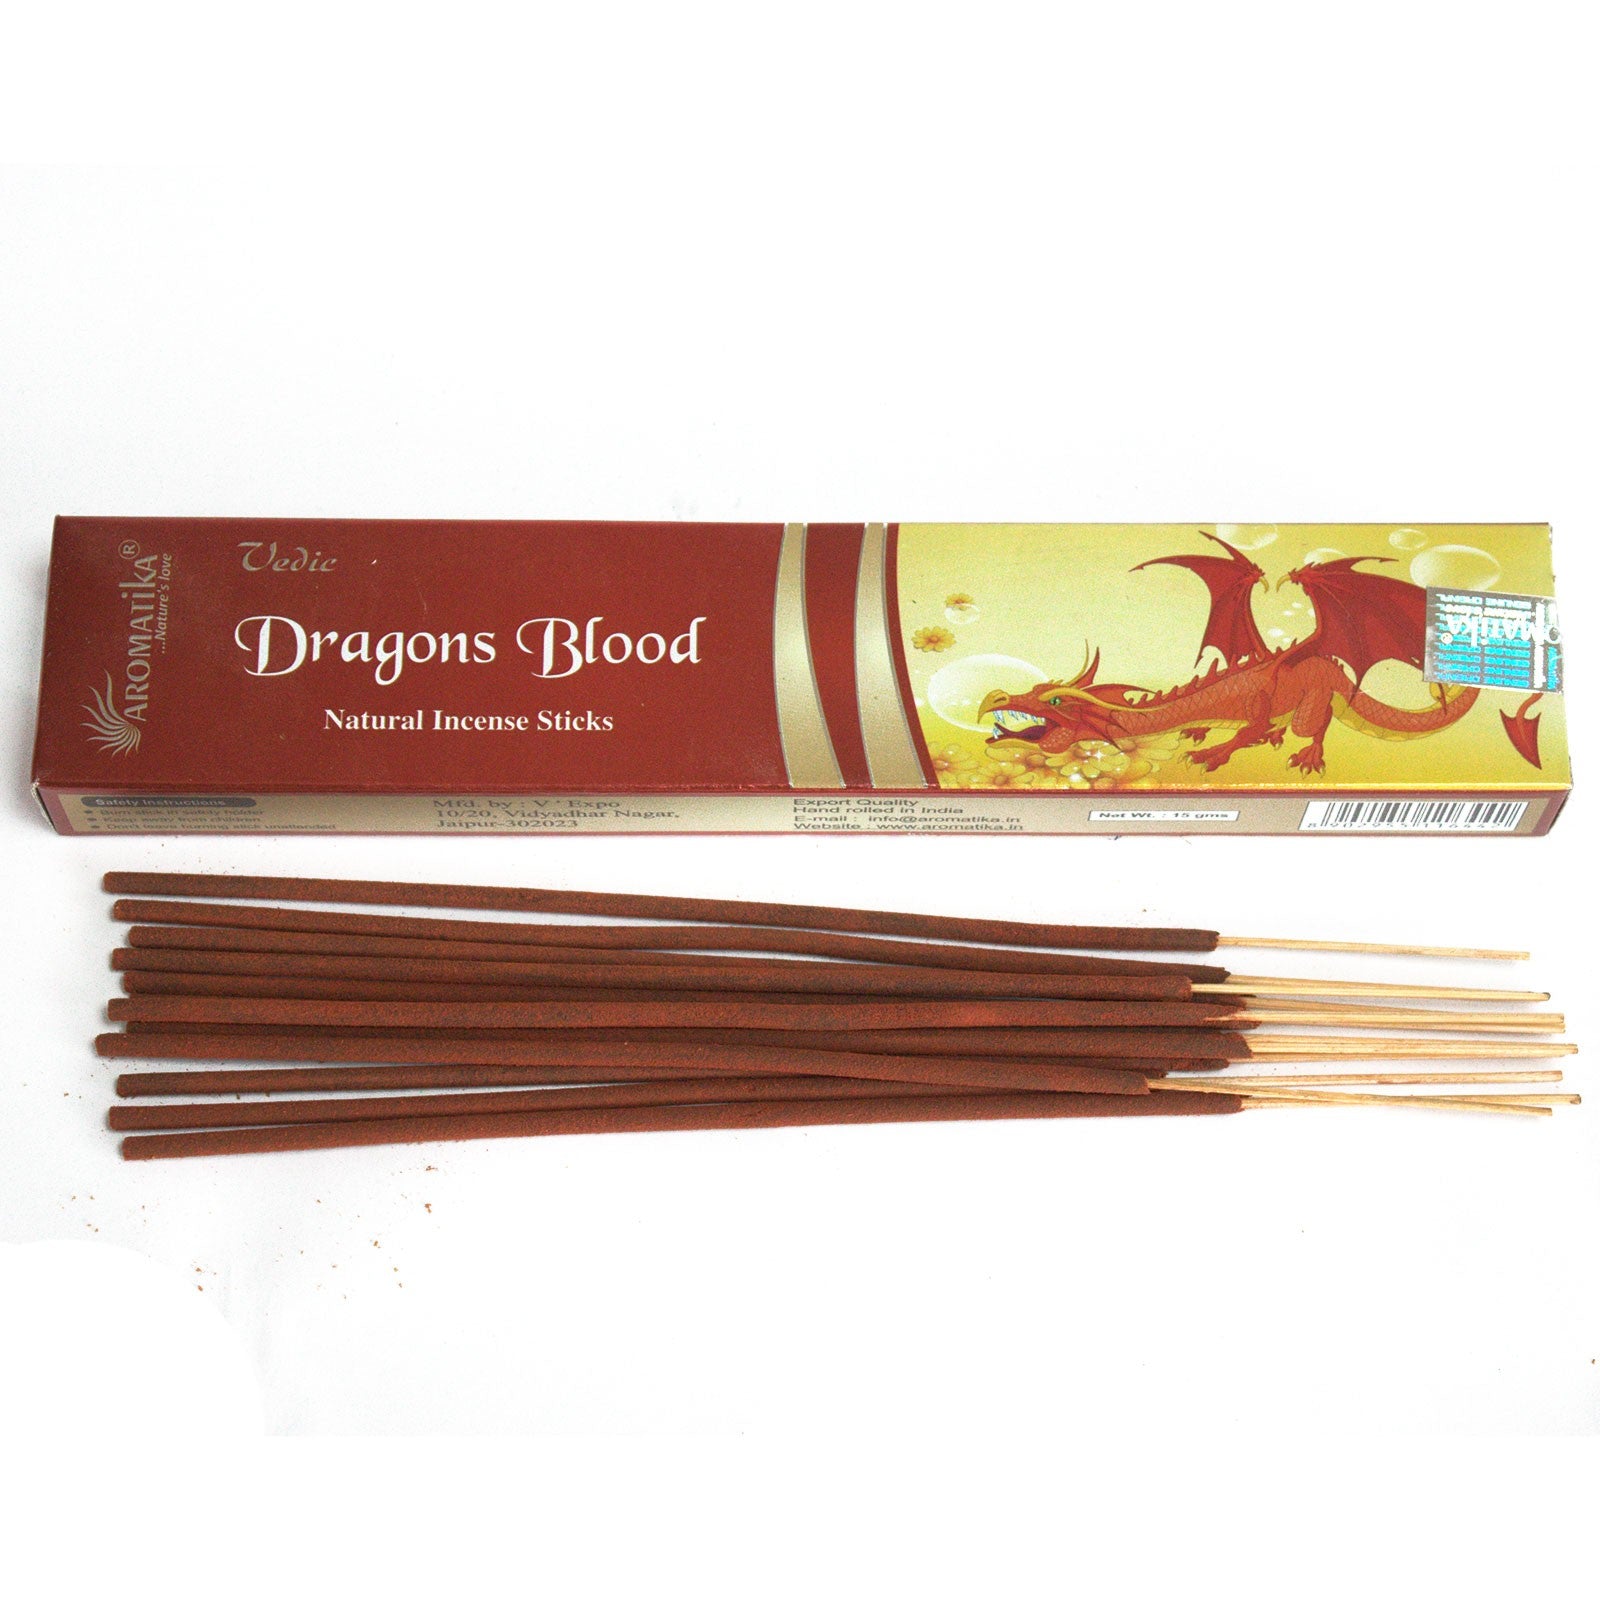 Vedic - Incense Sticks - Dragons Blood